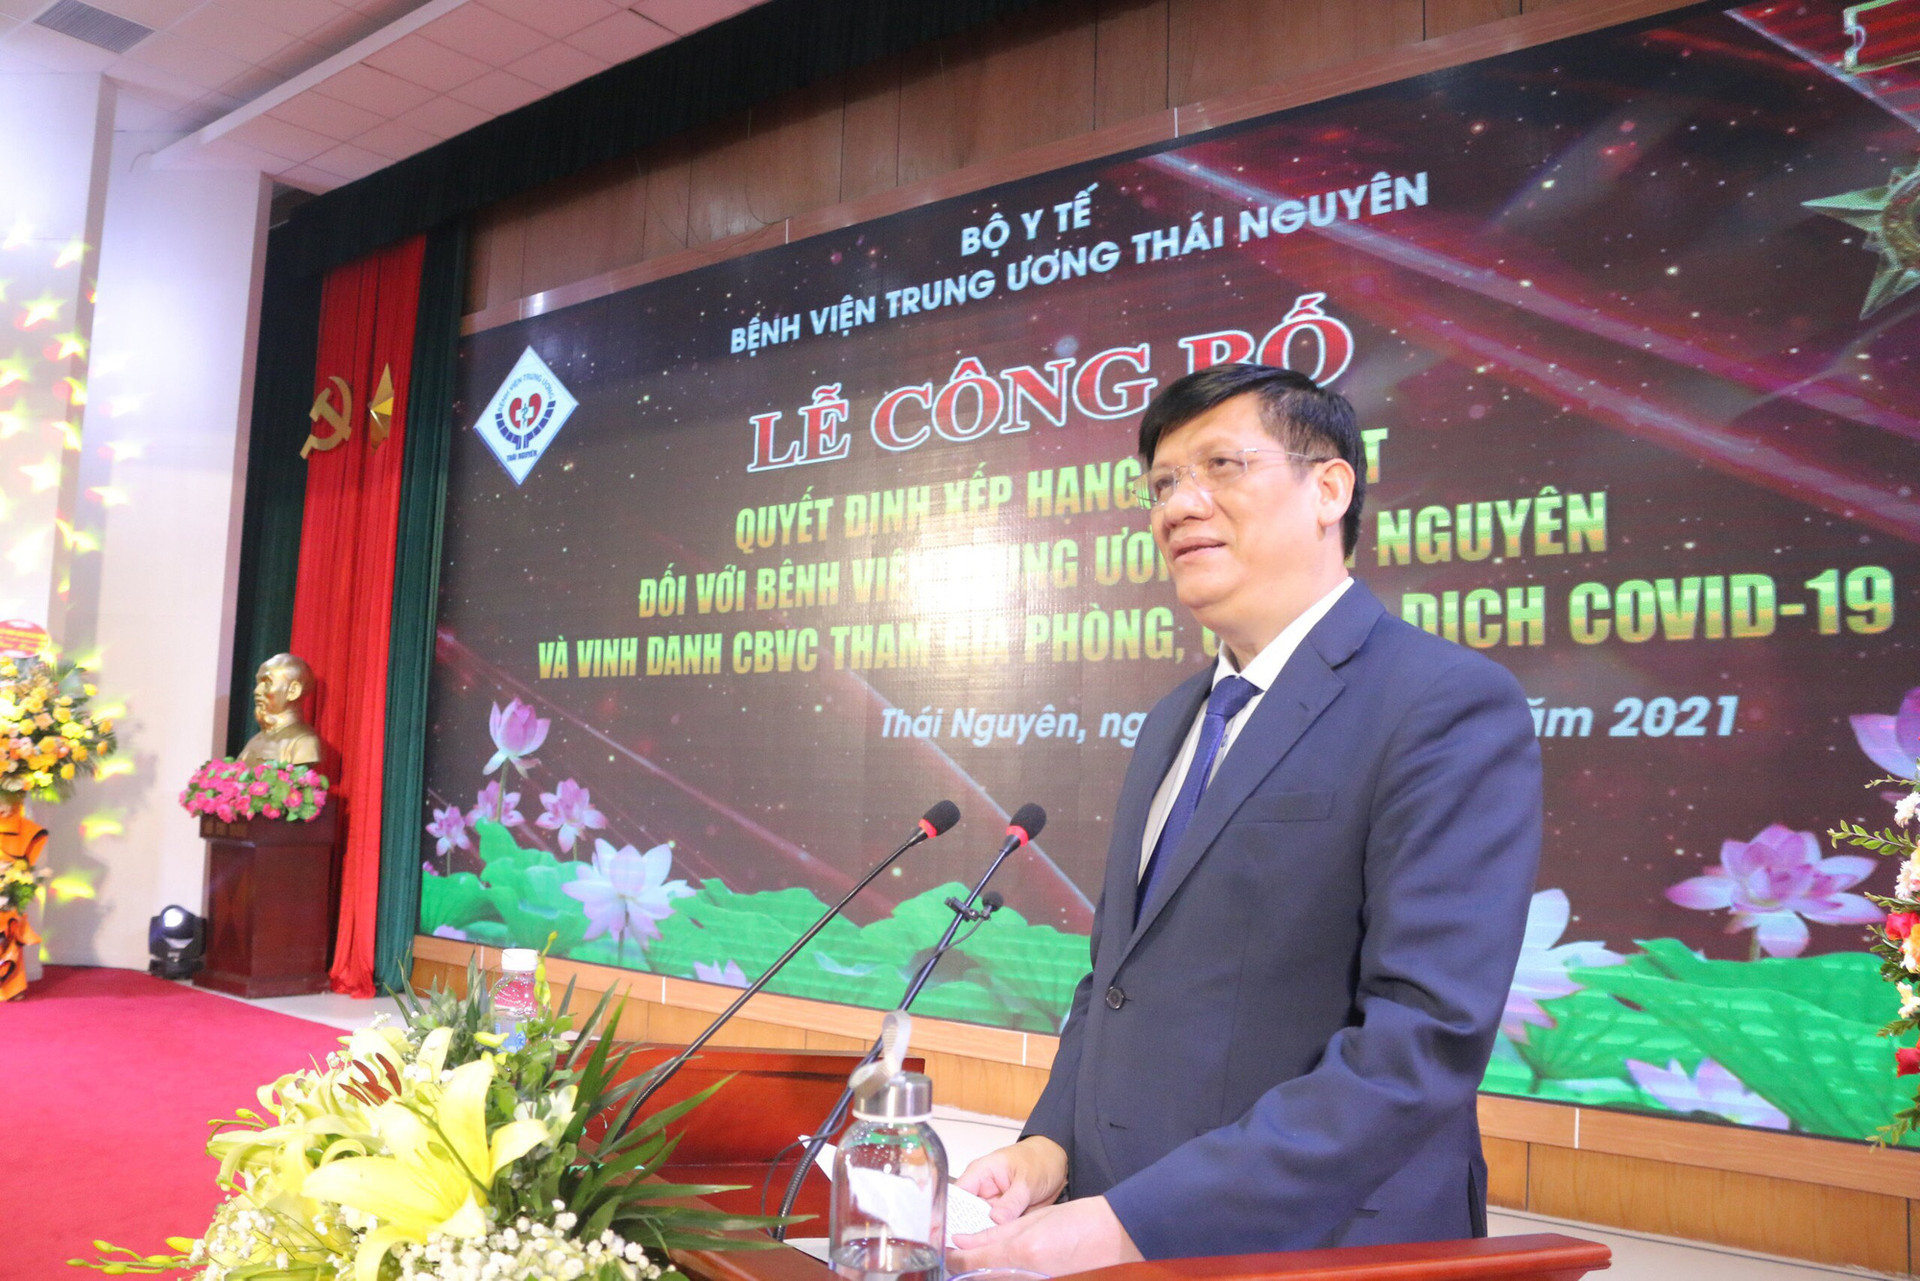 Bộ trưởng Bộ Y tế trao quyết định hạng đặc biệt cho BV TW Thái Nguyên - Ảnh 1.